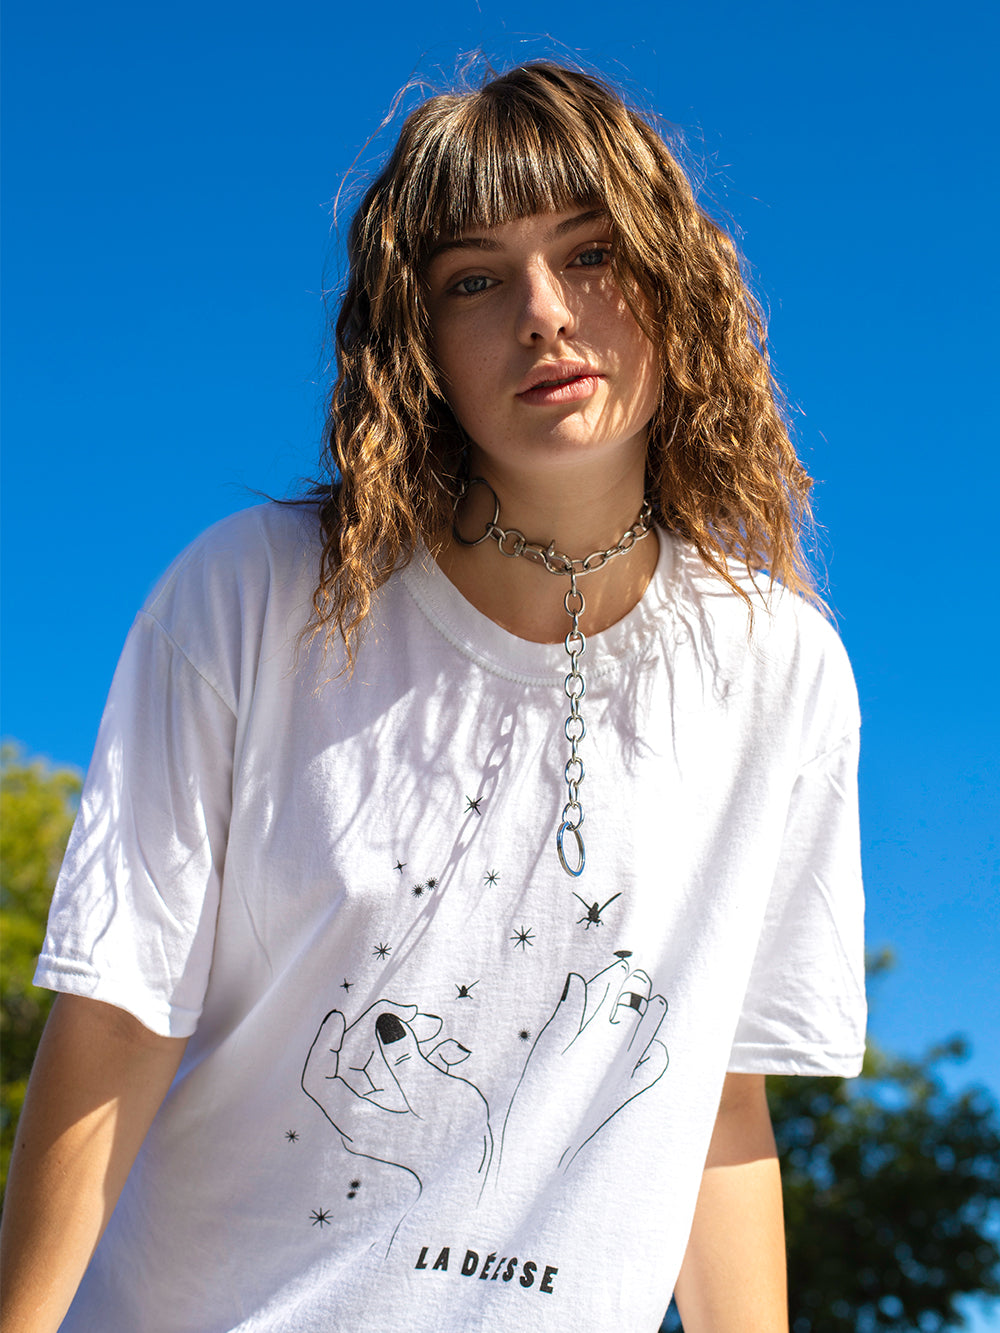 T-shirt de la marque Beurd en collaboration avec La Déesse des mouches à feu porté par modele